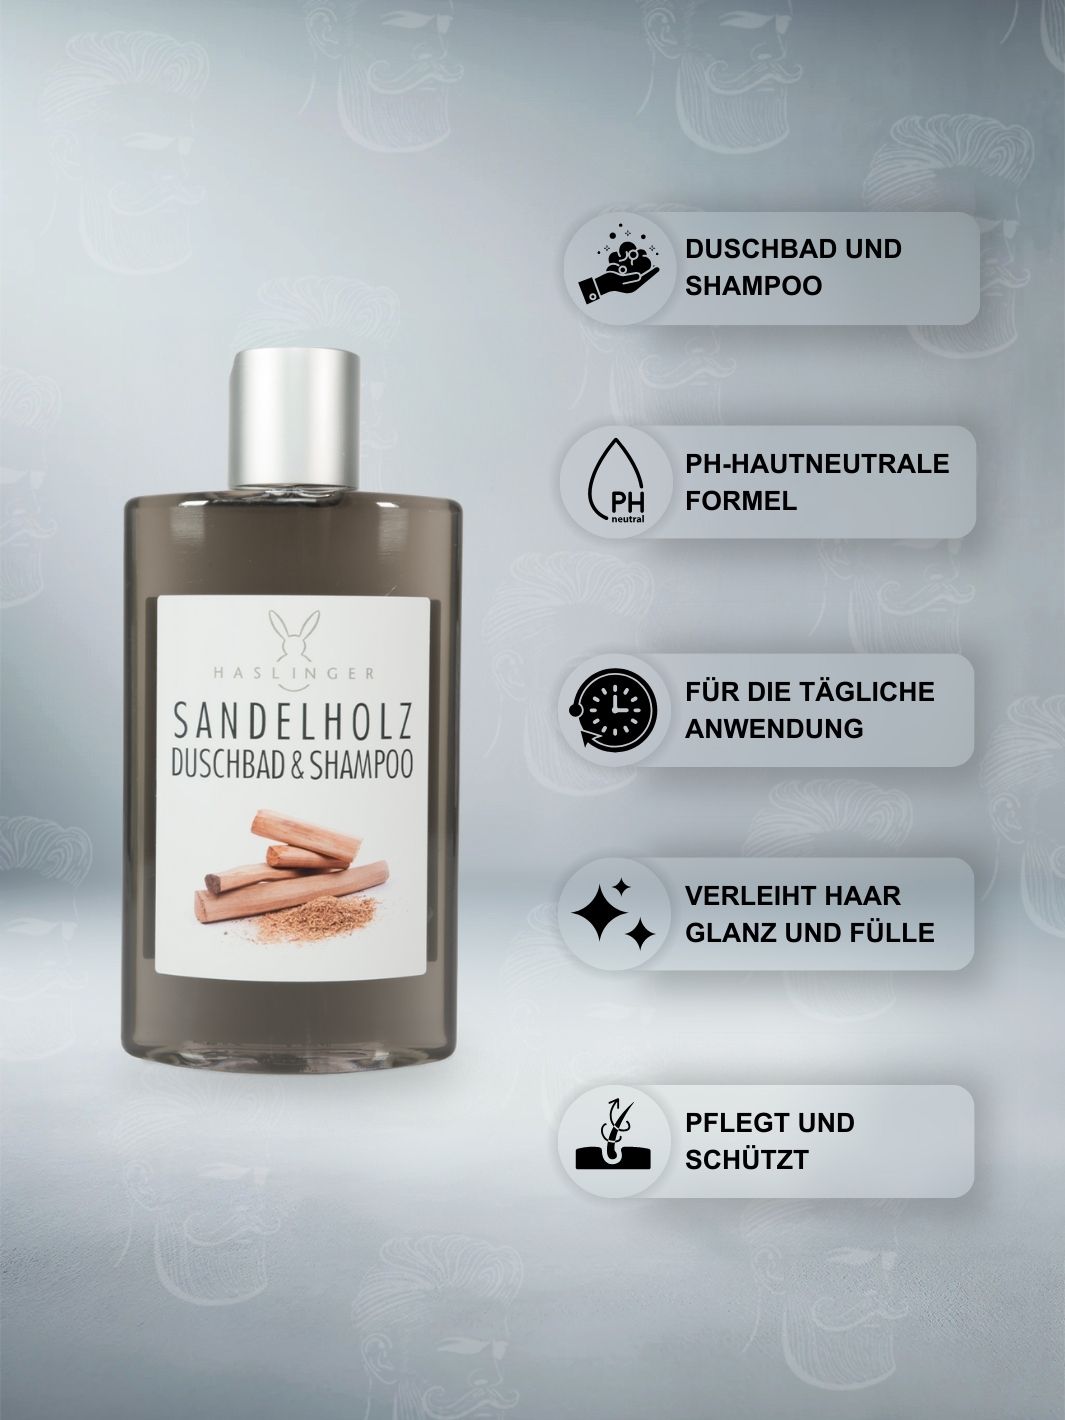 Haslinger Sandelholz Duschbad & Shampoo 200ml mit pH-hautneutraler Formel, für die tägliche Anwendung geeignet, verleiht dem Haar Glanz und Fülle, pflegt und schützt die Haut.